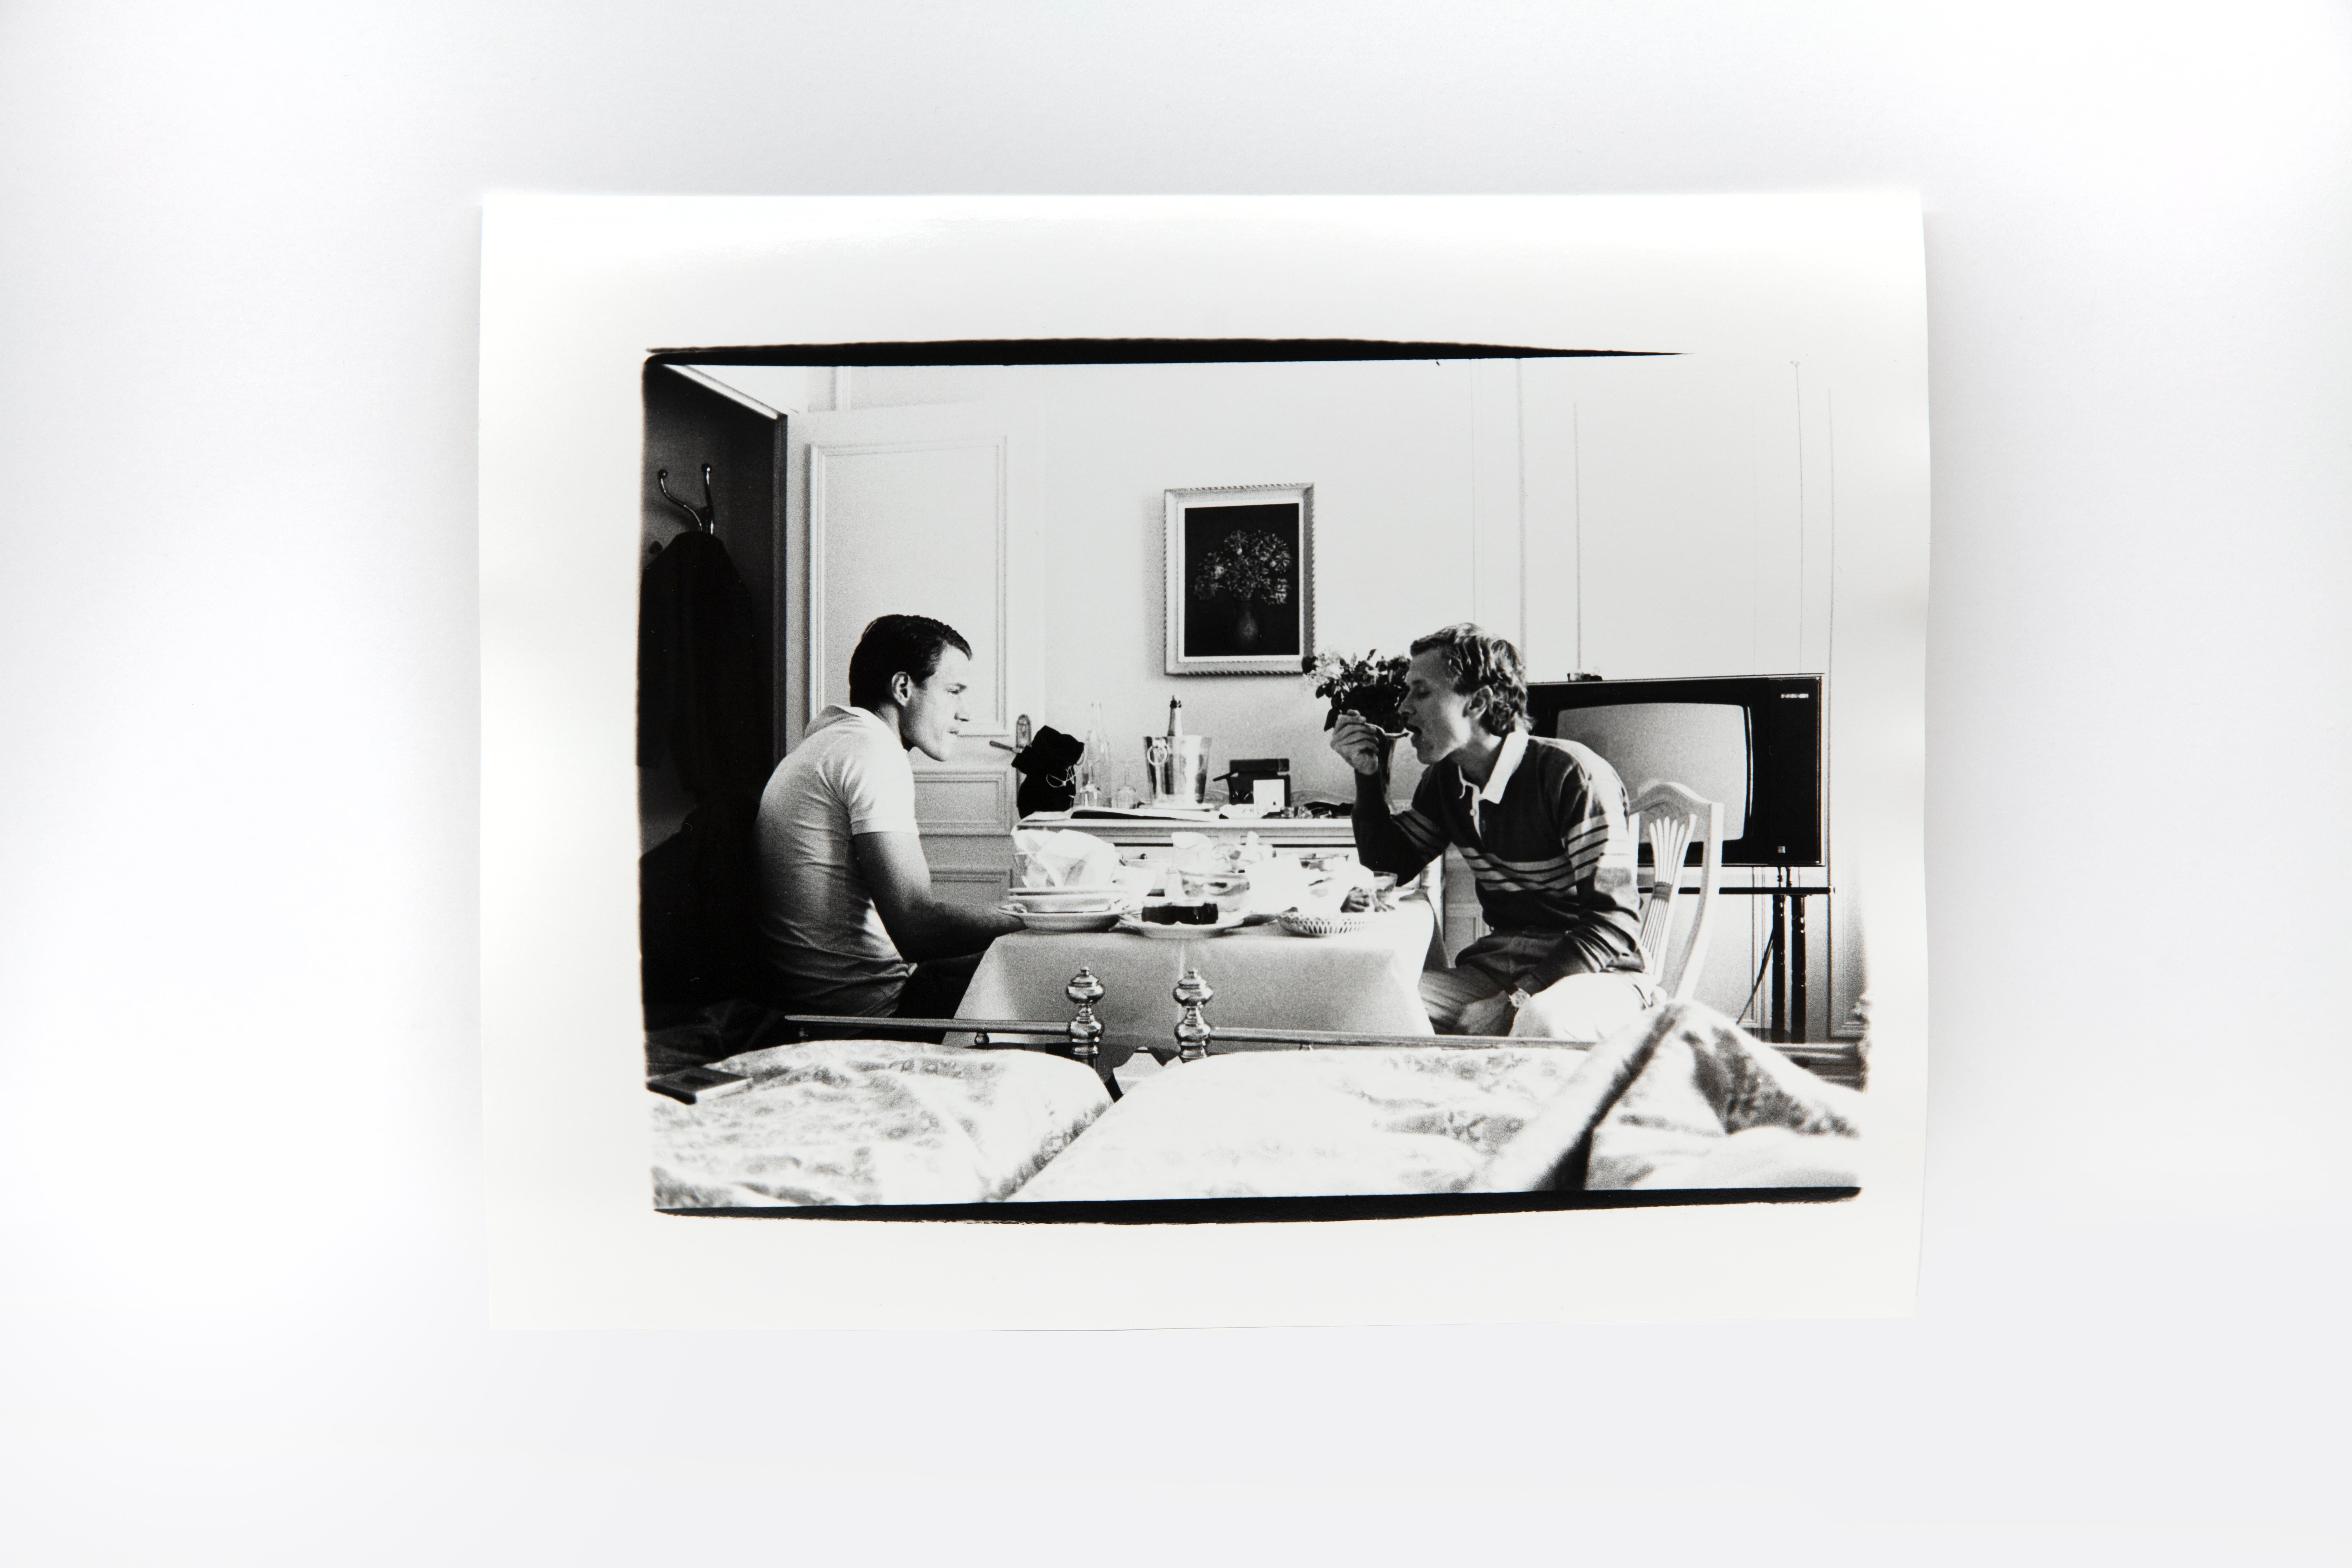 Andy Warhol Portrait Photograph – Jed Johnson und Thomas Ammann im Hotelzimmer, Monte Carlo